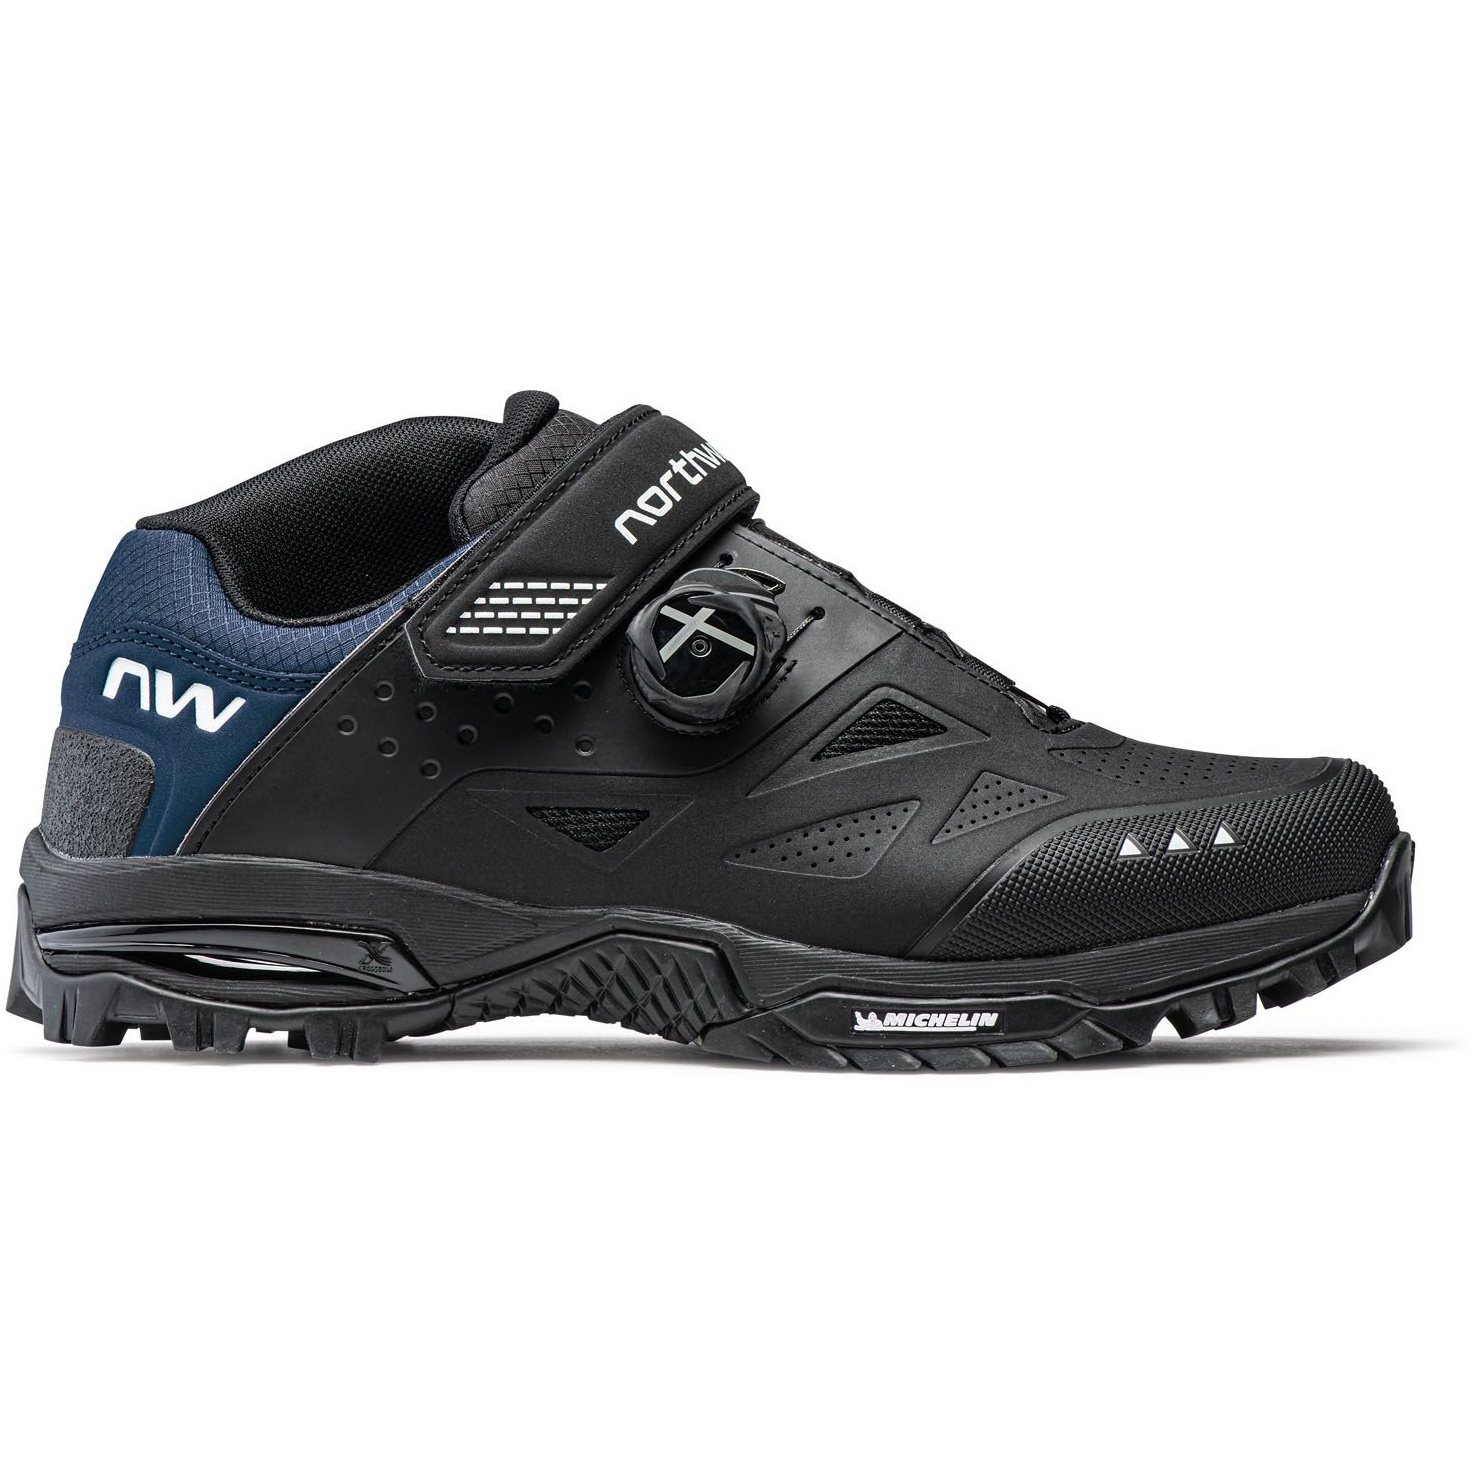 Produktbild von Northwave Enduro Mid 2 All Terrain Schuhe - schwarz/dark blue 08